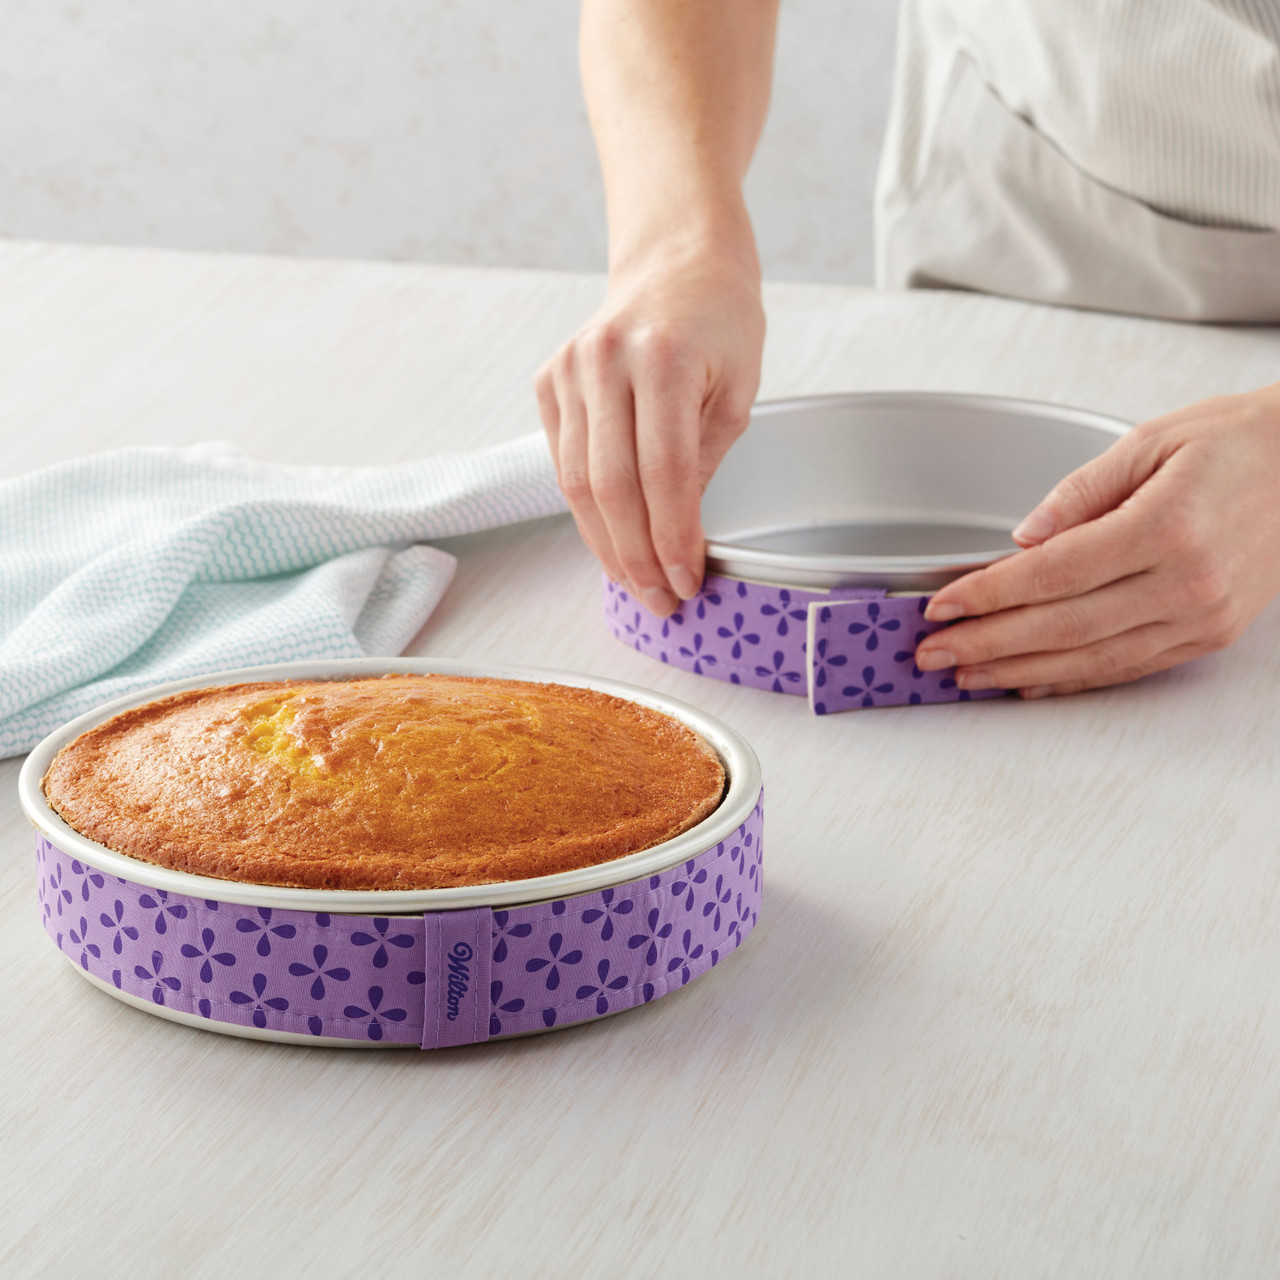 Unique Cake Pans 